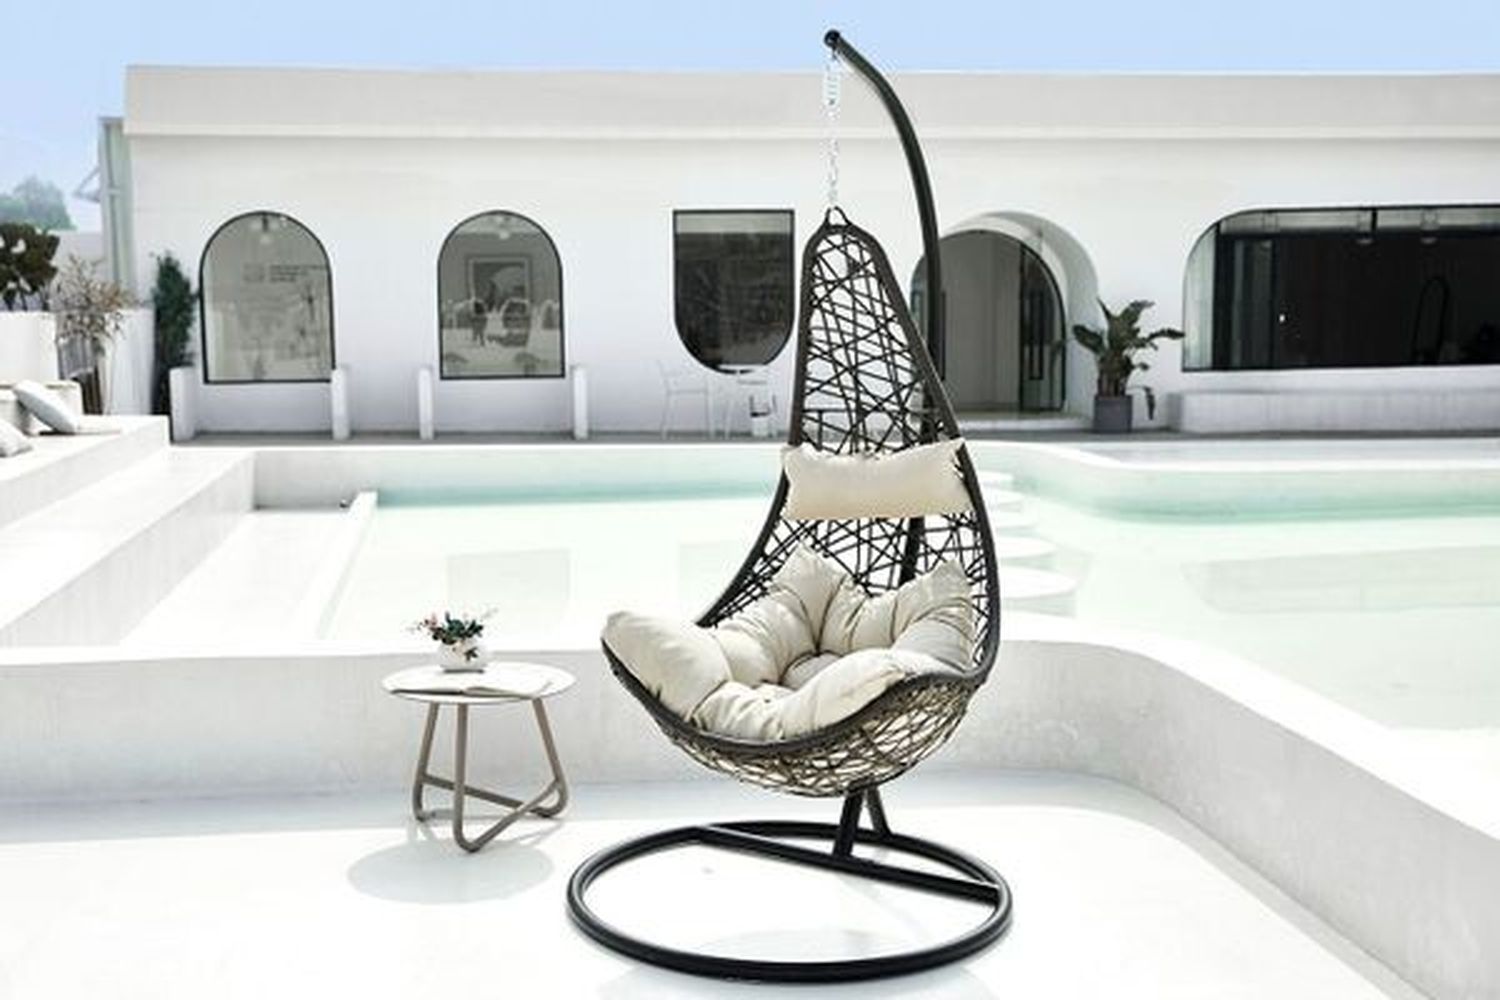 Wanten Maak los prinses Half moon hangstoel Feel Furniture - Hangstoel van Feel Furniture (voor  binnen en buiten) | VakantieVeilingen.nl | Bied mee